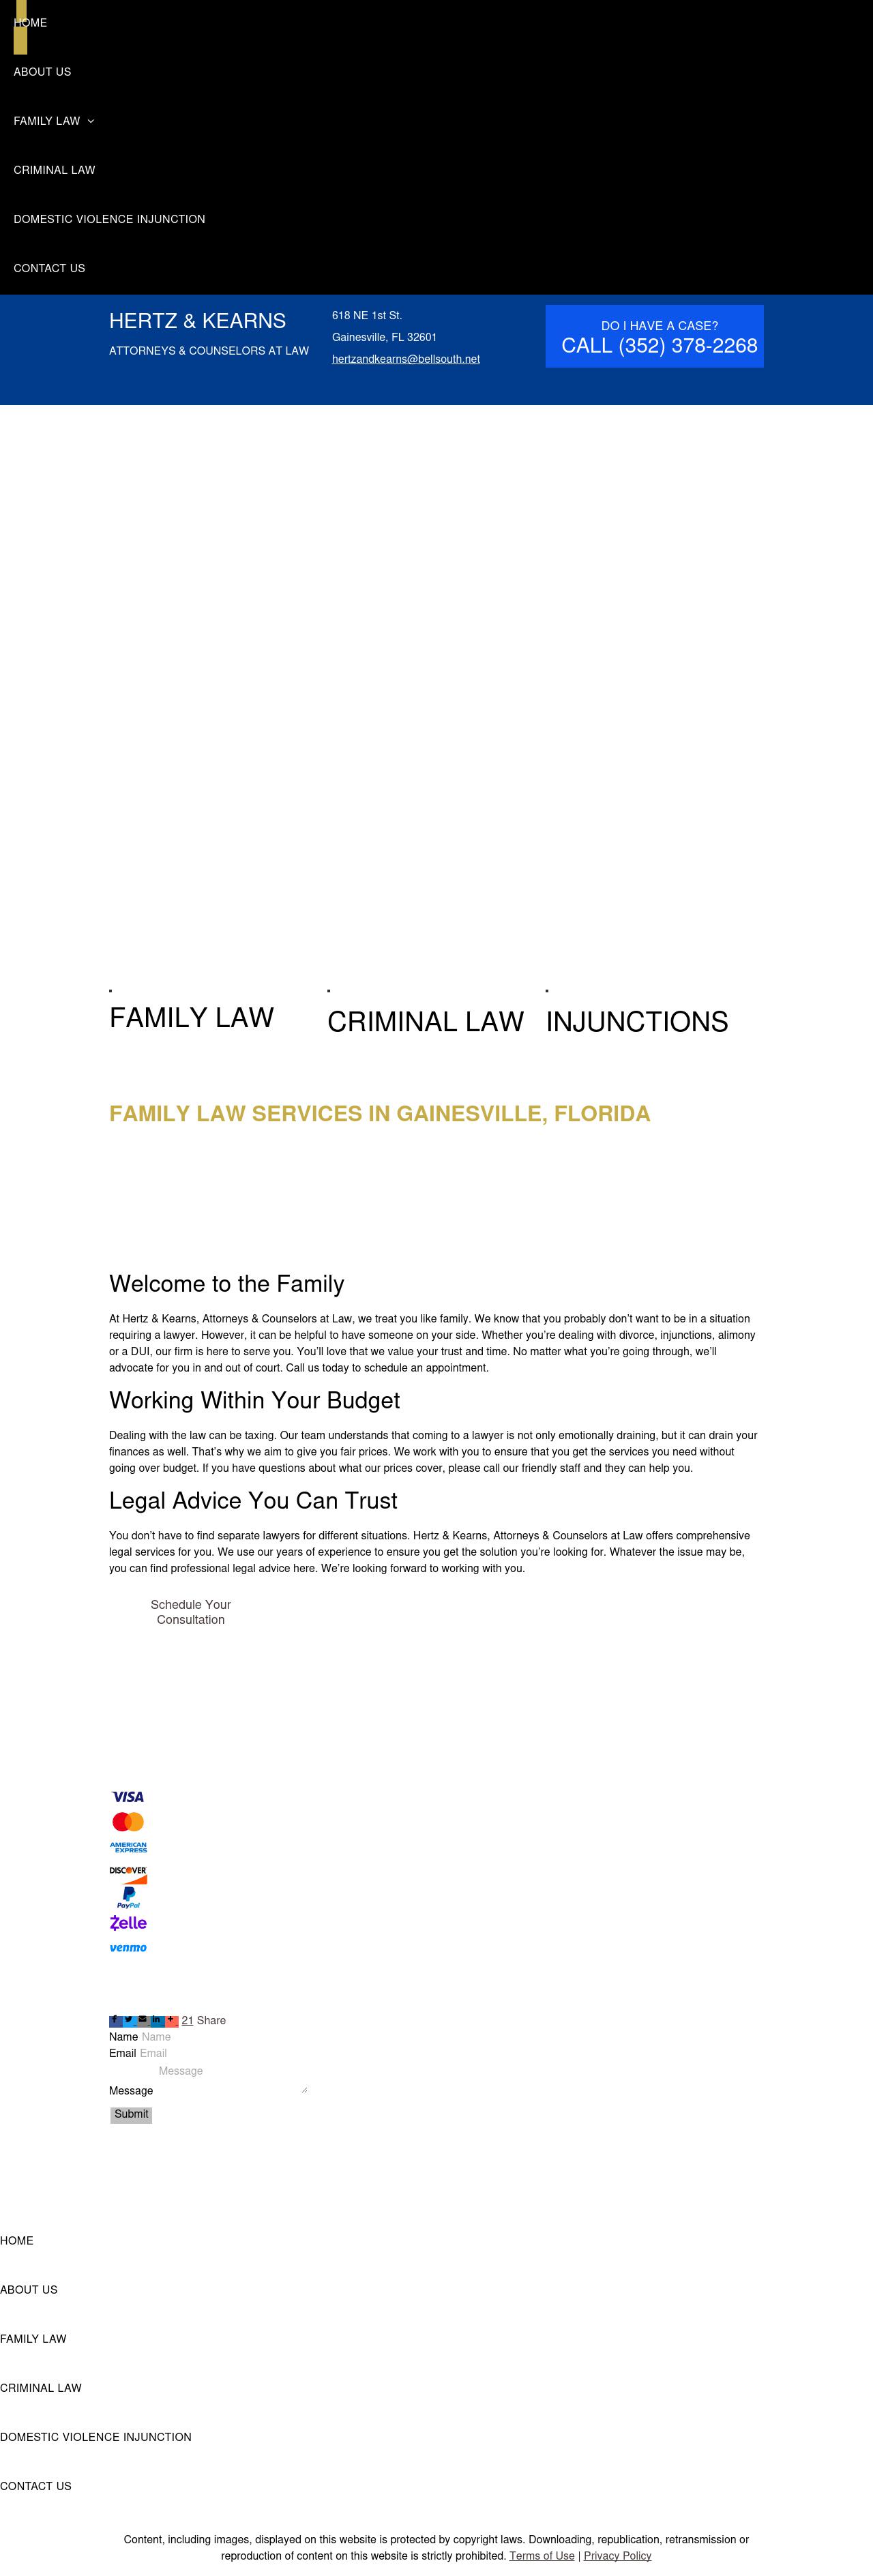 Hertz & Kearns - Gainesville FL Lawyers